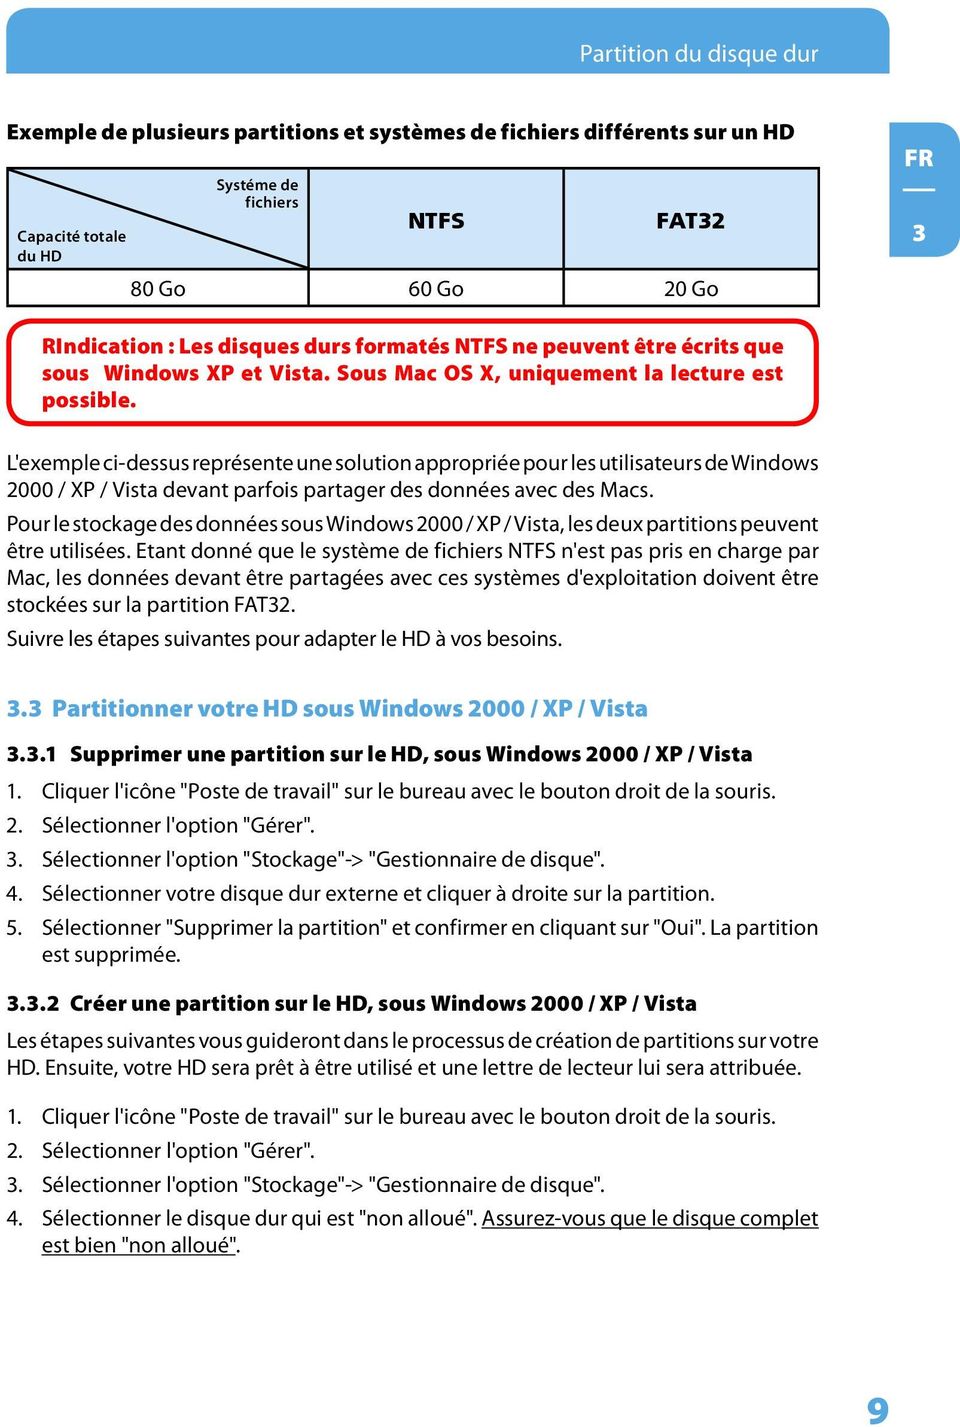 L'exemple ci-dessus représente une solution appropriée pour les utilisateurs de Windows 2000 / XP / Vista devant parfois partager des données avec des Macs.